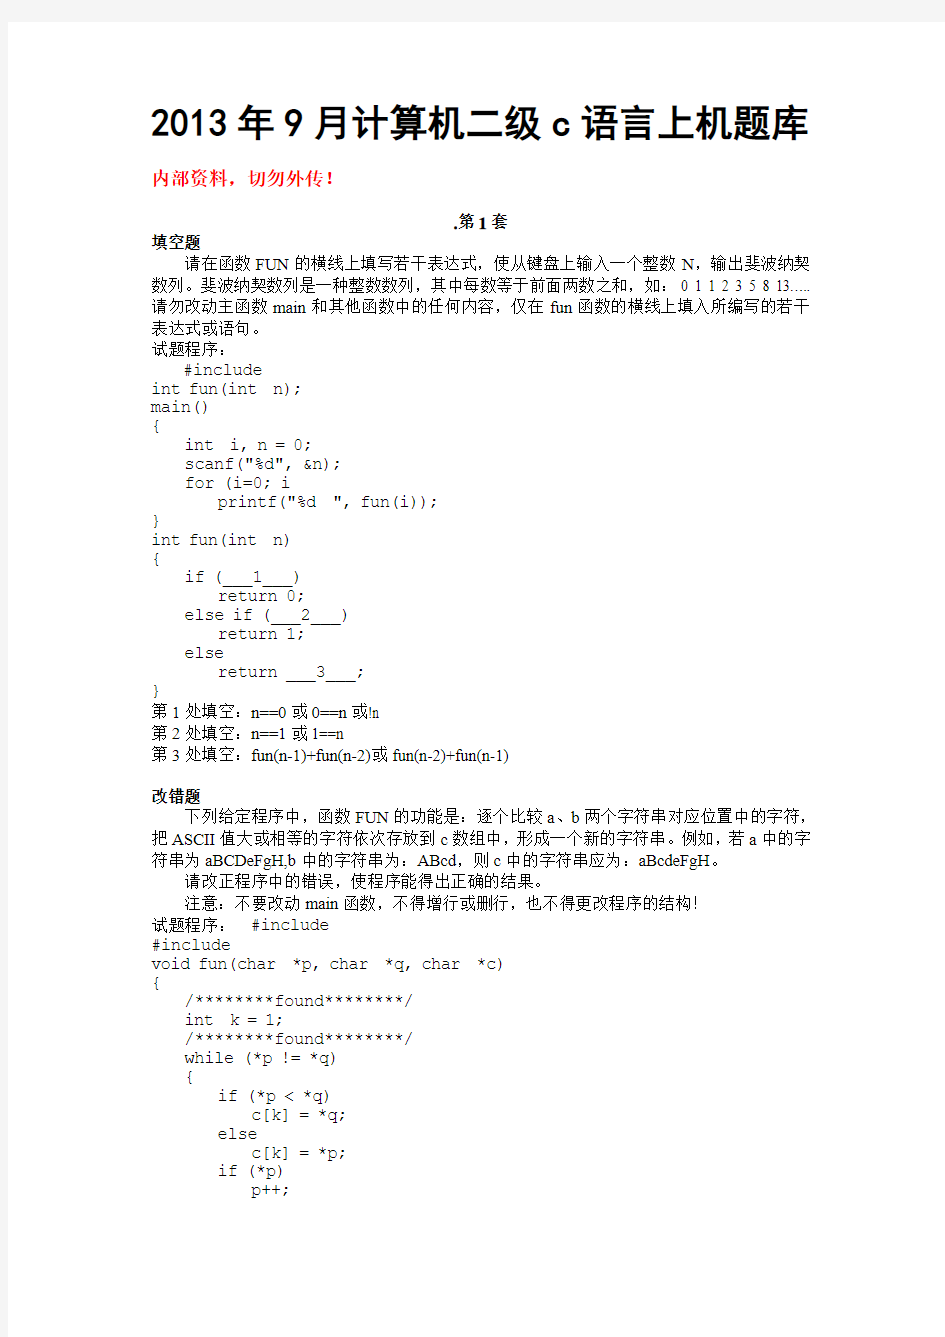 2013年9月计算机二级C语言上机题库及答案(破译版)